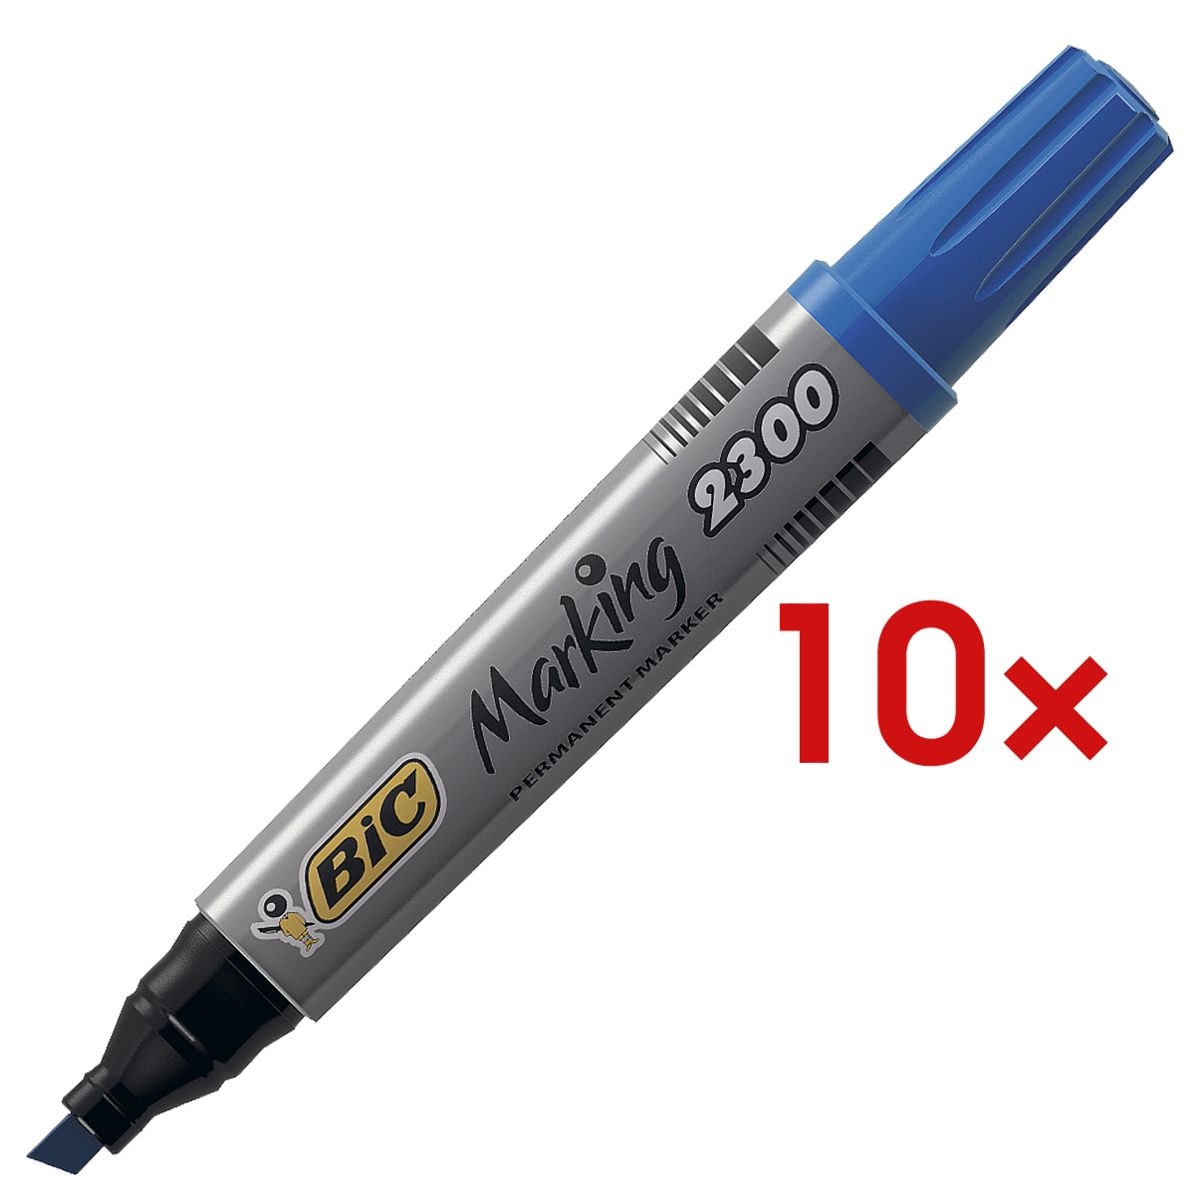 10x BIC marqueur indlbile Marking 2300 - pointe biseaute, Epaisseur de trait 3,7  - 5,5 mm